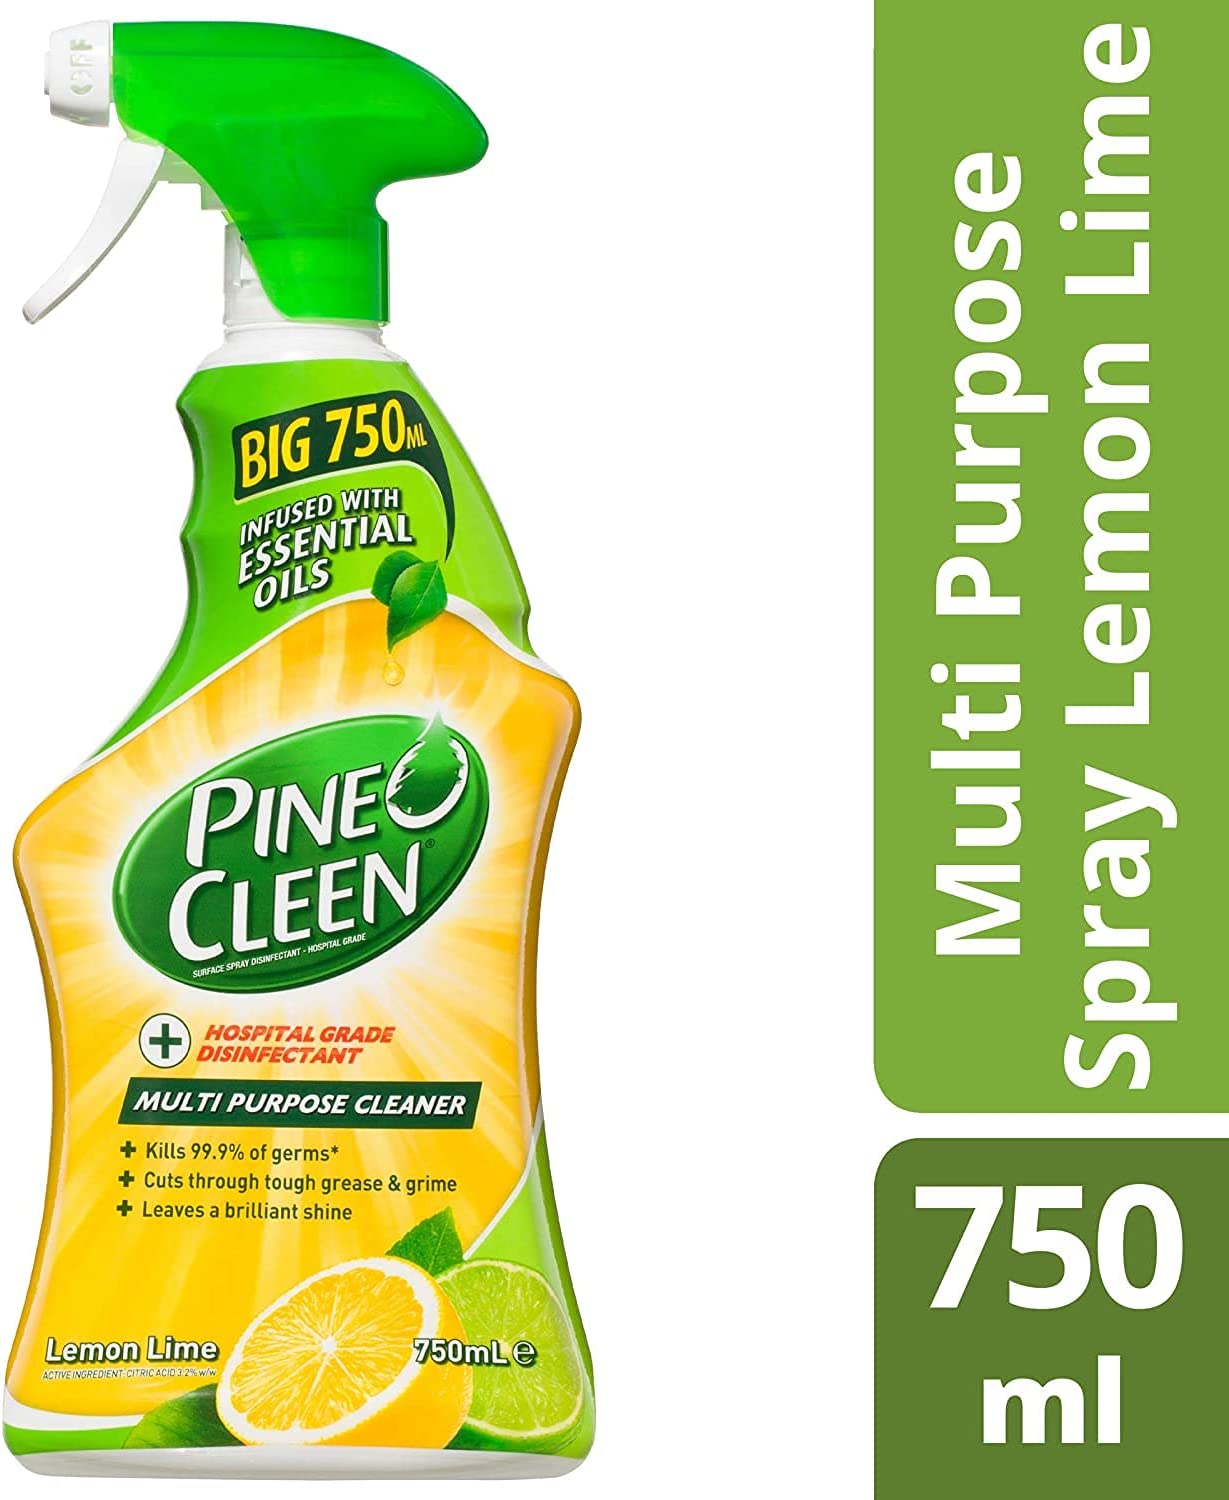 Pine O Cleen Disinfectant Multipurpose Cleaner Lemon Lime 750mL (Pack of 6)